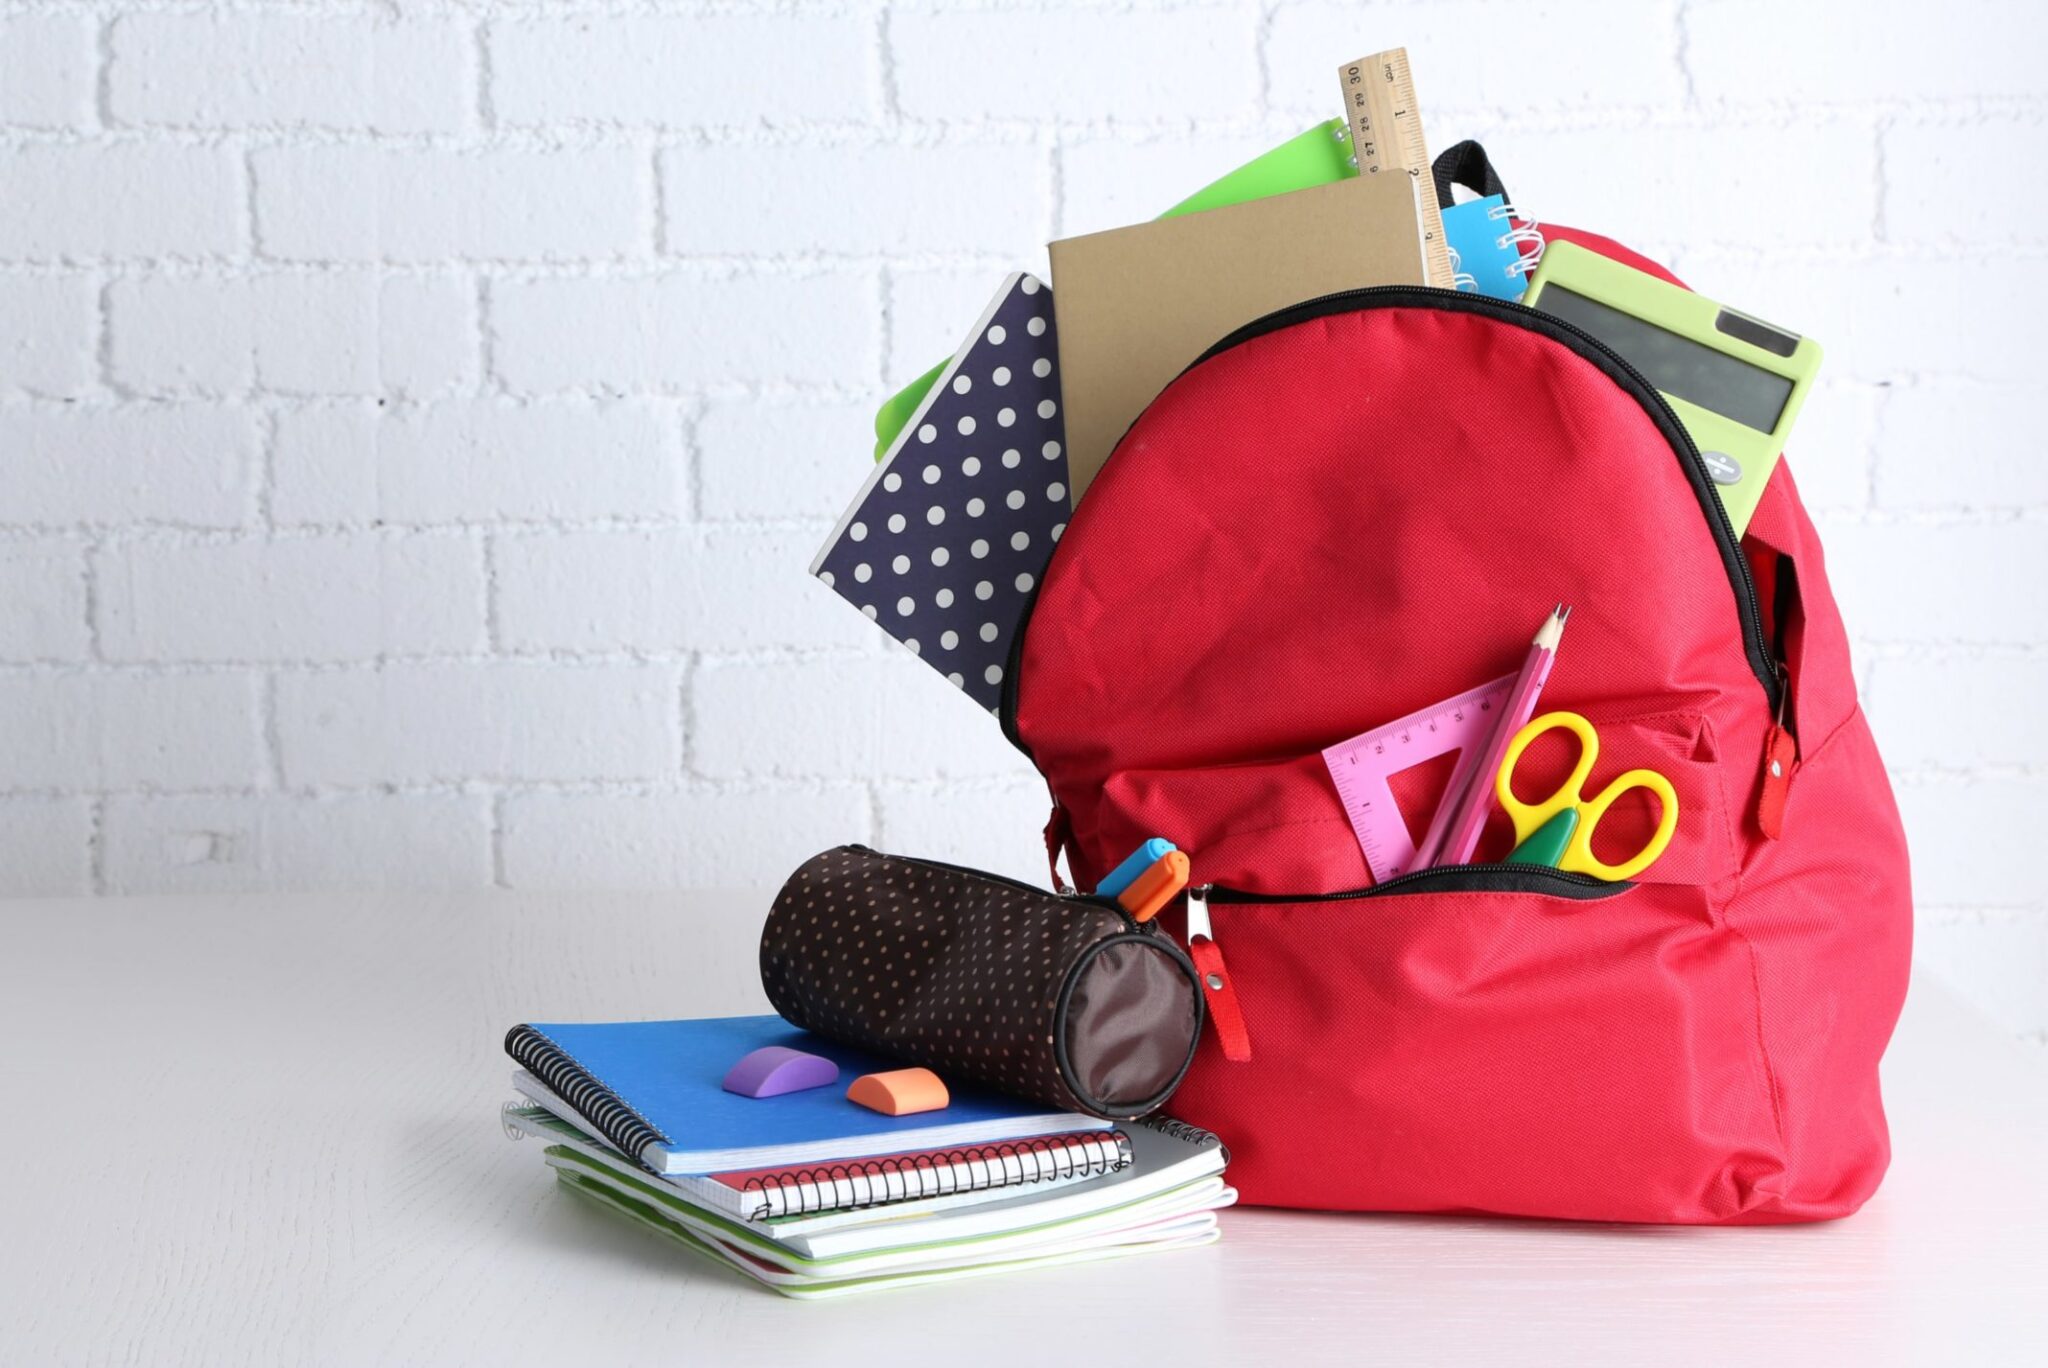 Back to school roxy. Портфель со школьными принадлежностями. Канцелярия рюкзаки для школы. Рюкзак с книгами. Сумка для школьных принадлежностей.